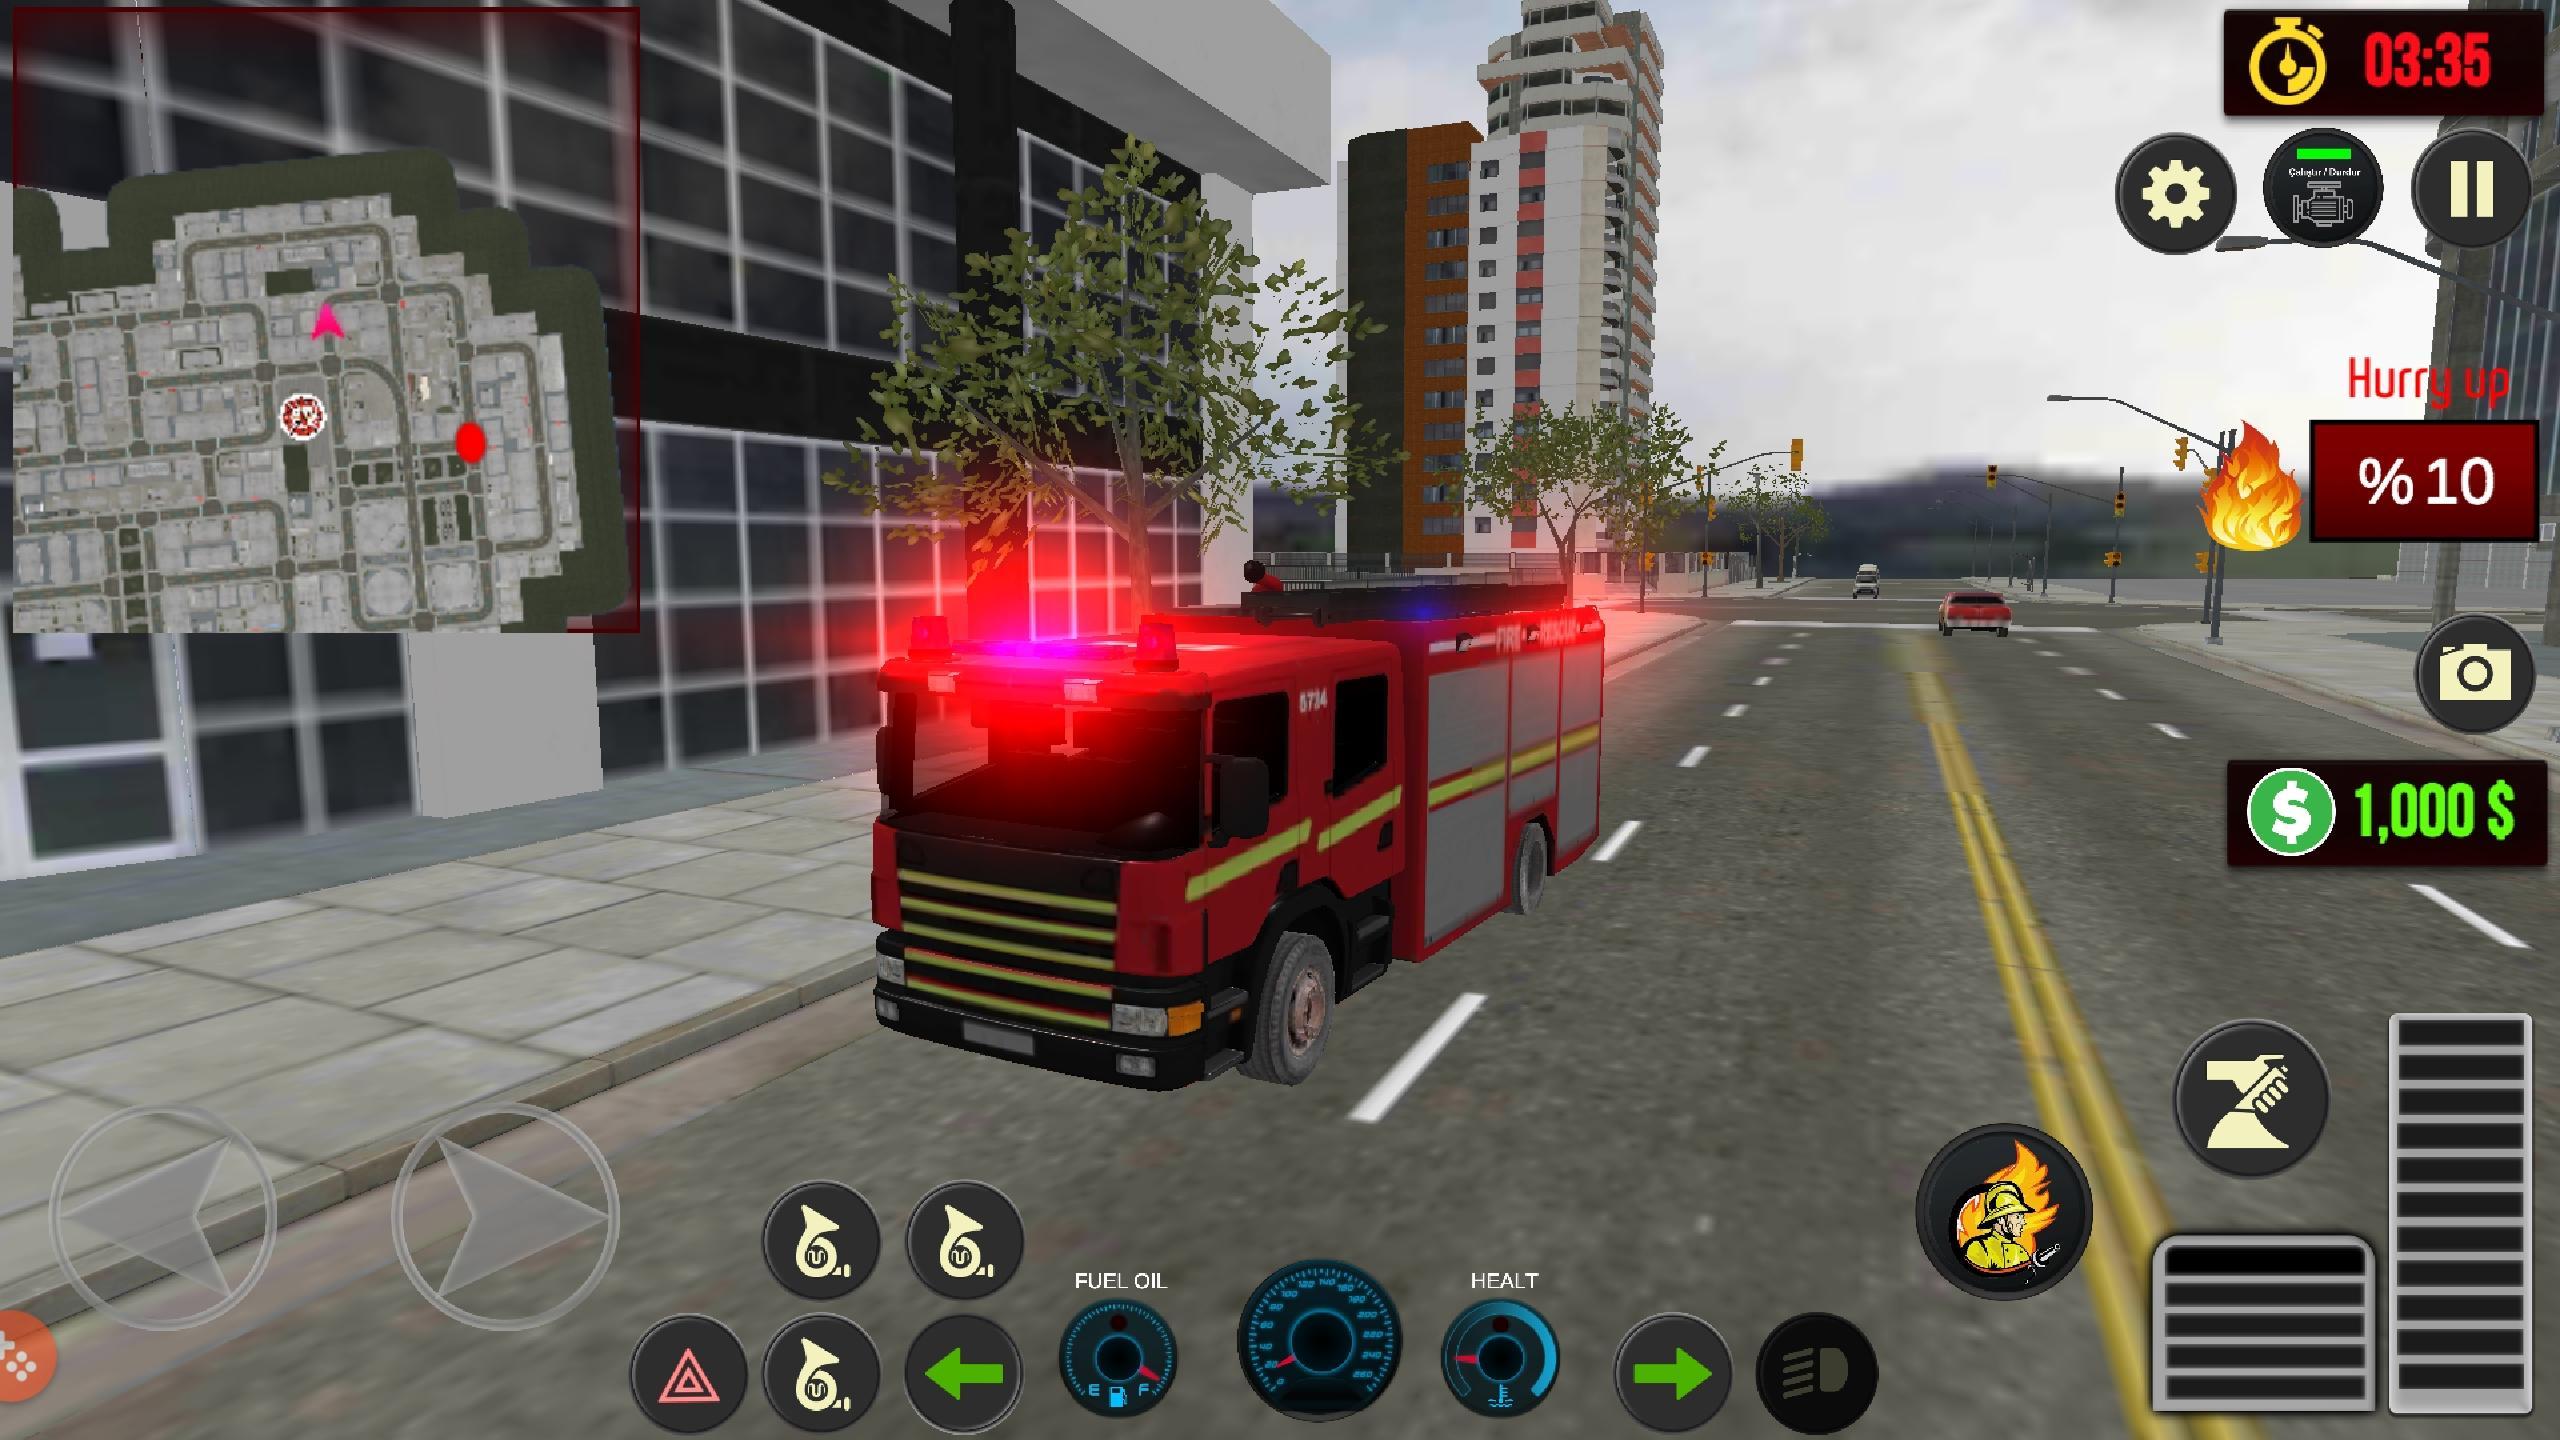 180 سيارة إطفاء حريق محاكاة for Android - APK Download